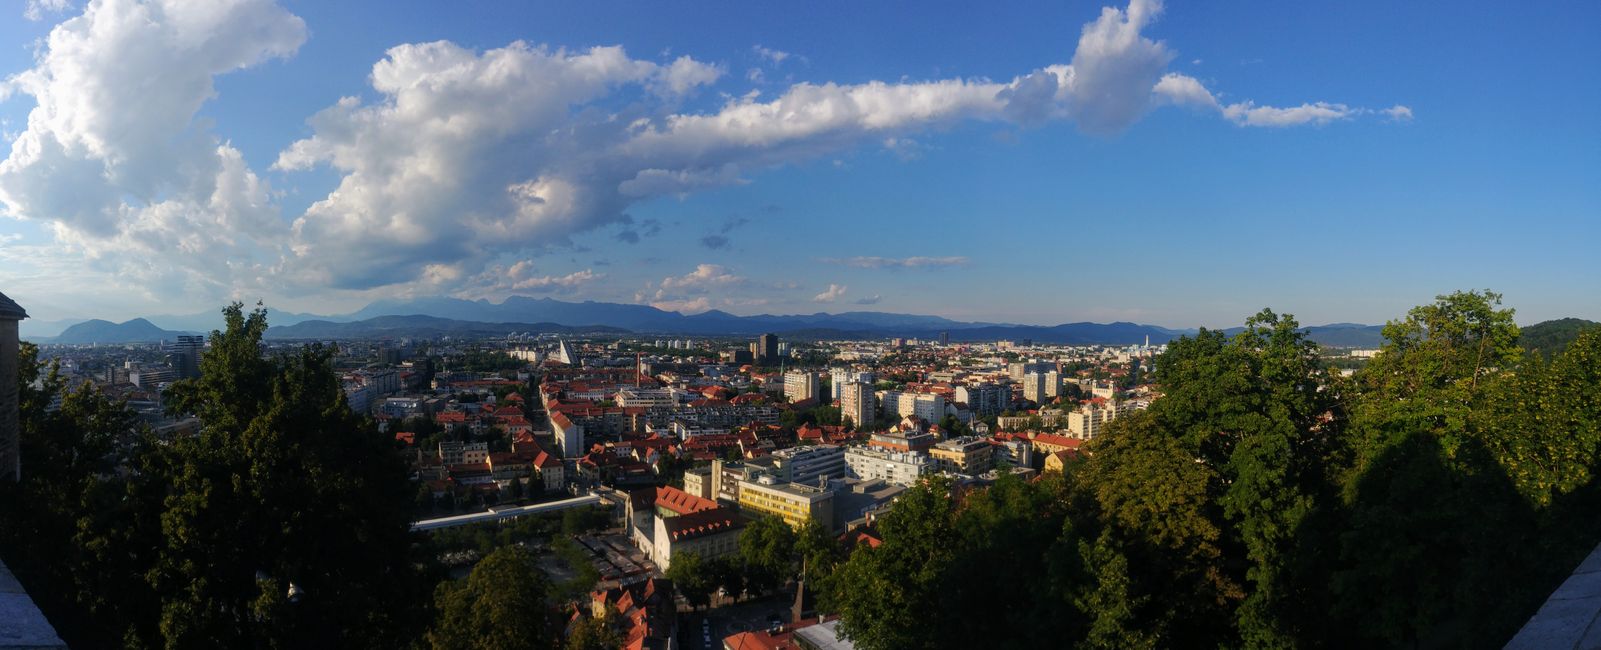 Aussicht von der Burg in Ljubljana.